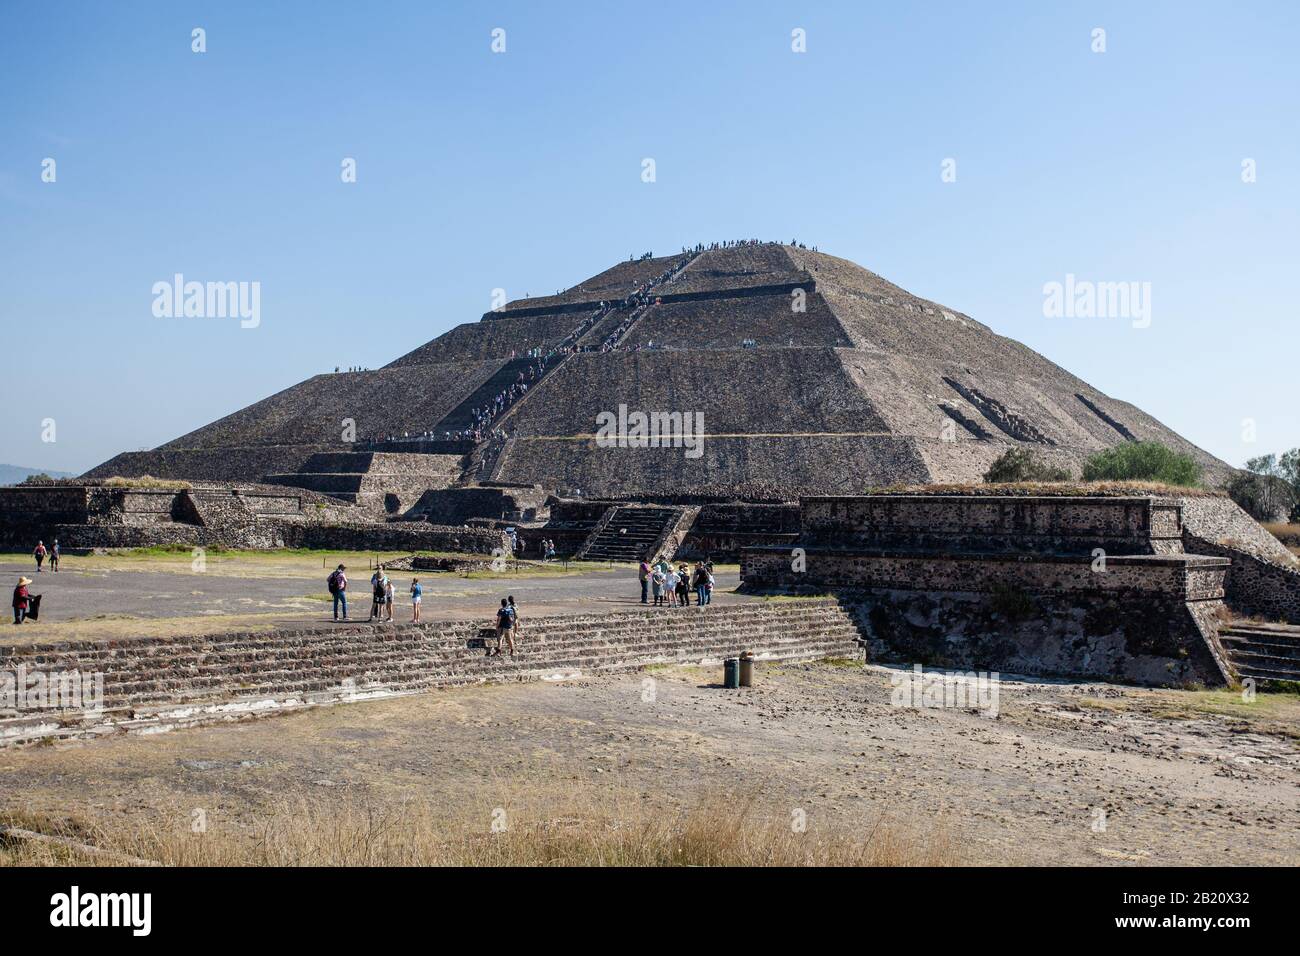 2019-11-25 Teotihuacan, Mexiko. Mit Blick auf die Pyramide der Sonne klettern viele Touristen auf die Spitze der Pyramide. Stockfoto